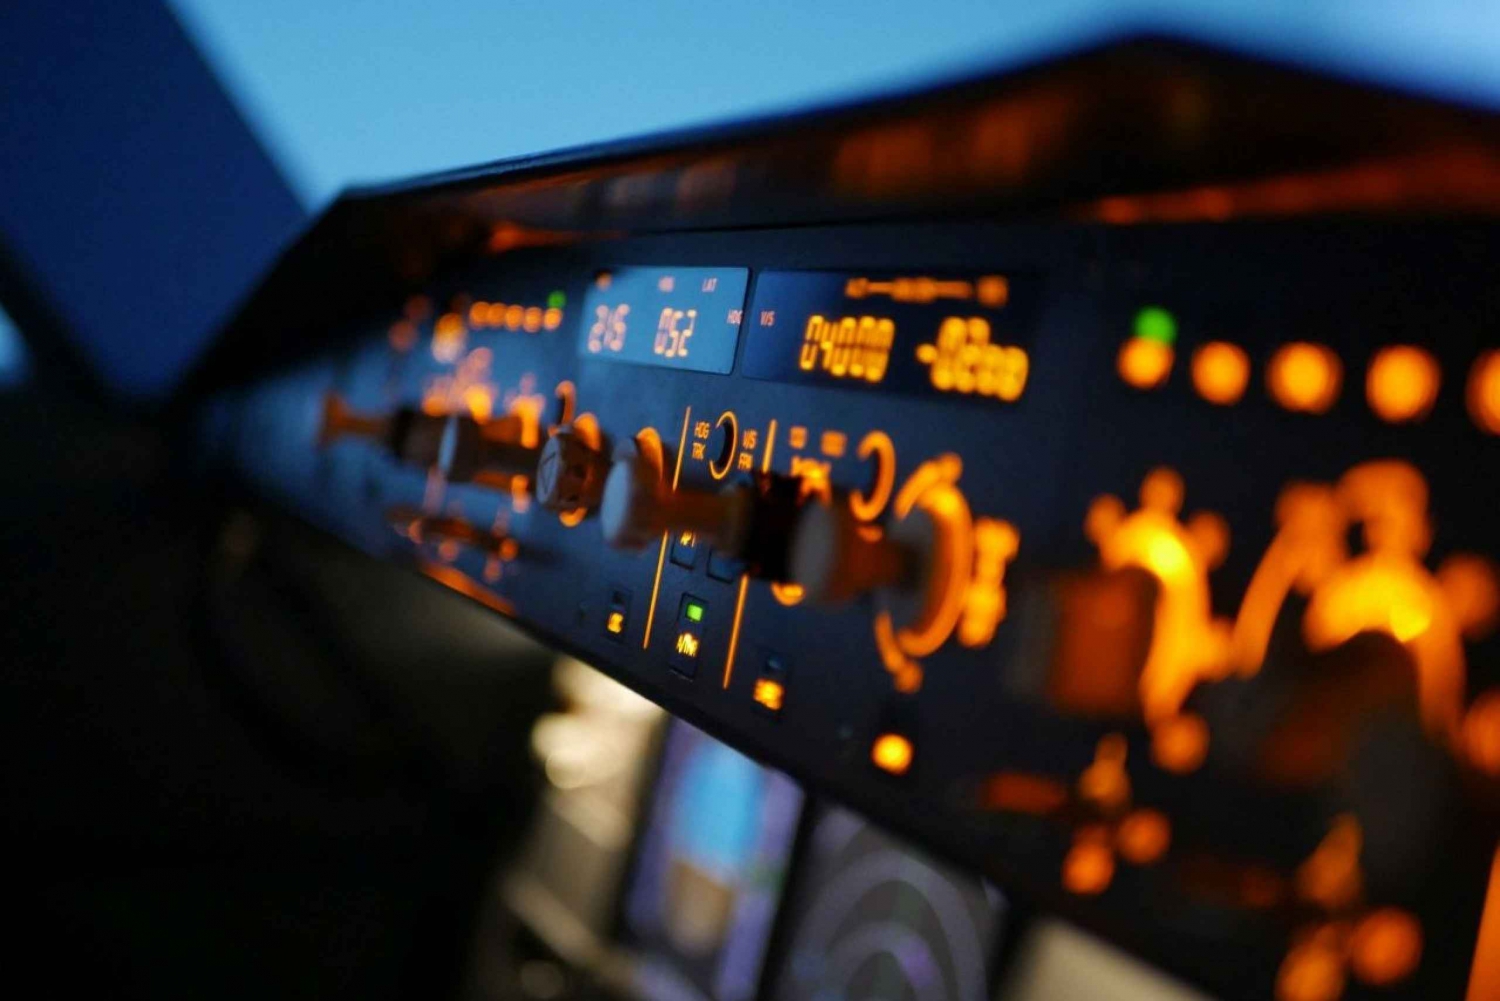 Munich: Airbus A320 Flight Simulator Private Tour